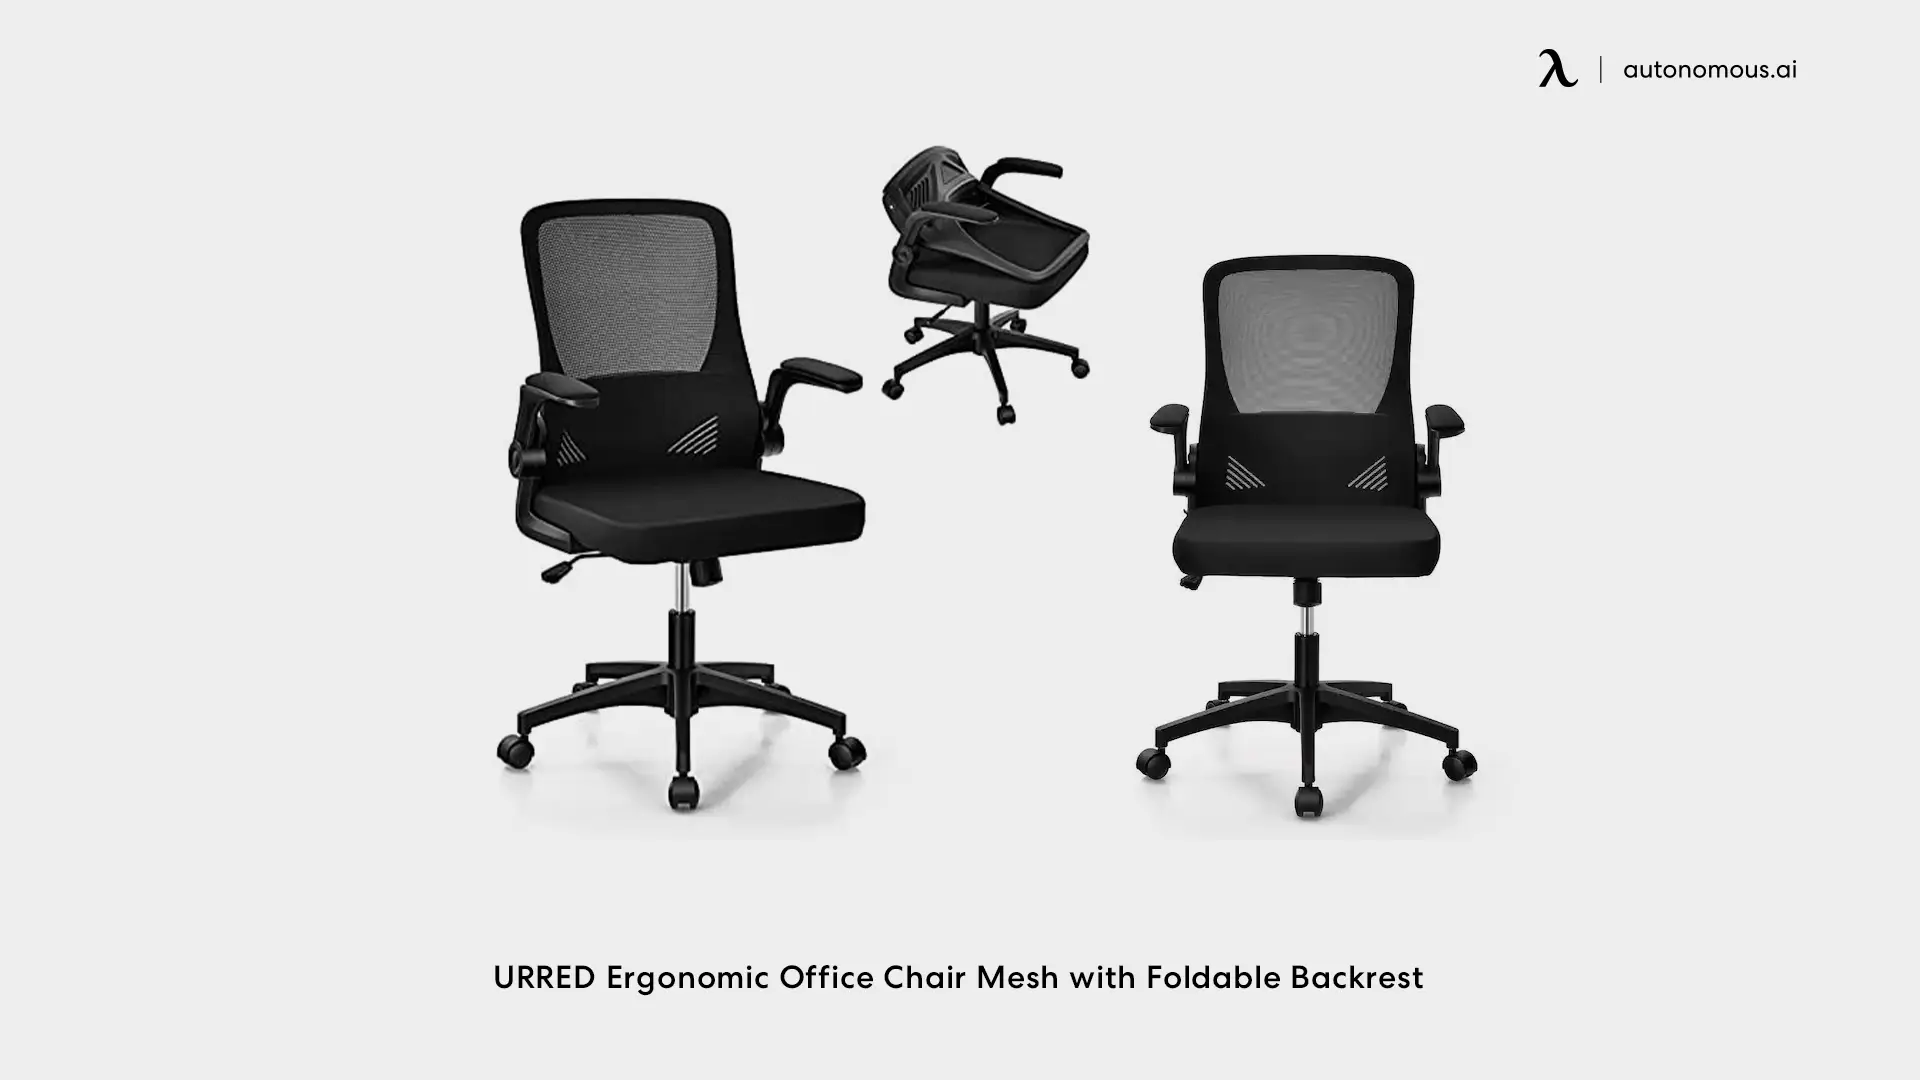 URRED Ergonomic Office Chair - Foldable Backrest